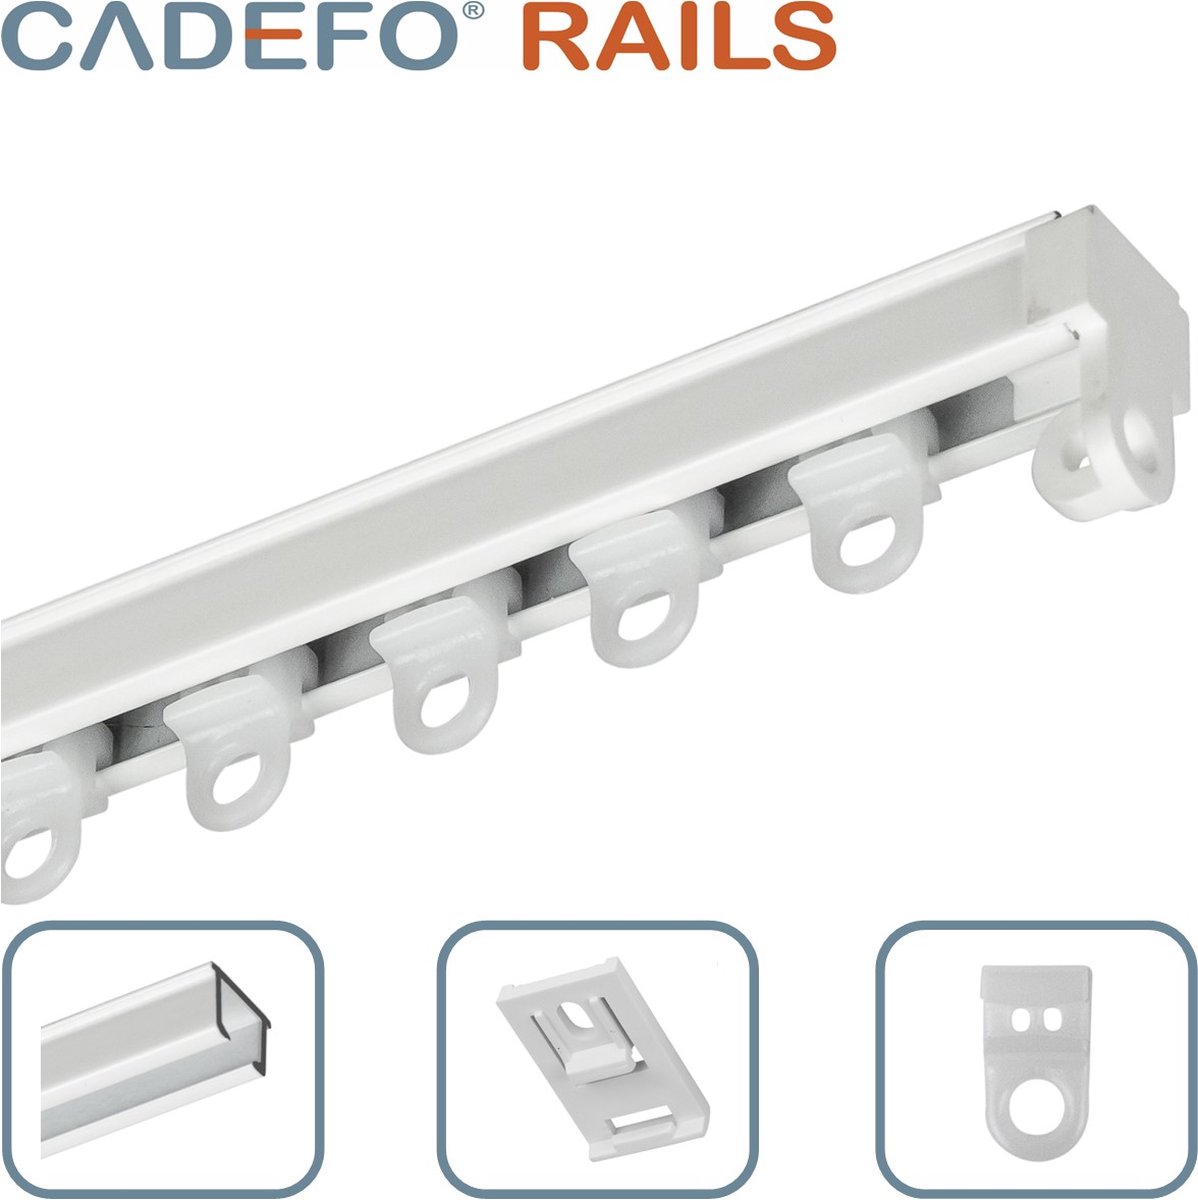 CADEFO RAILS (080 - 100 cm) Gordijnrails - Compleet op maat! - UIT 1 STUK - Leverbaar tot 6 meter - Plafondbevestiging - Lengte 98 cm